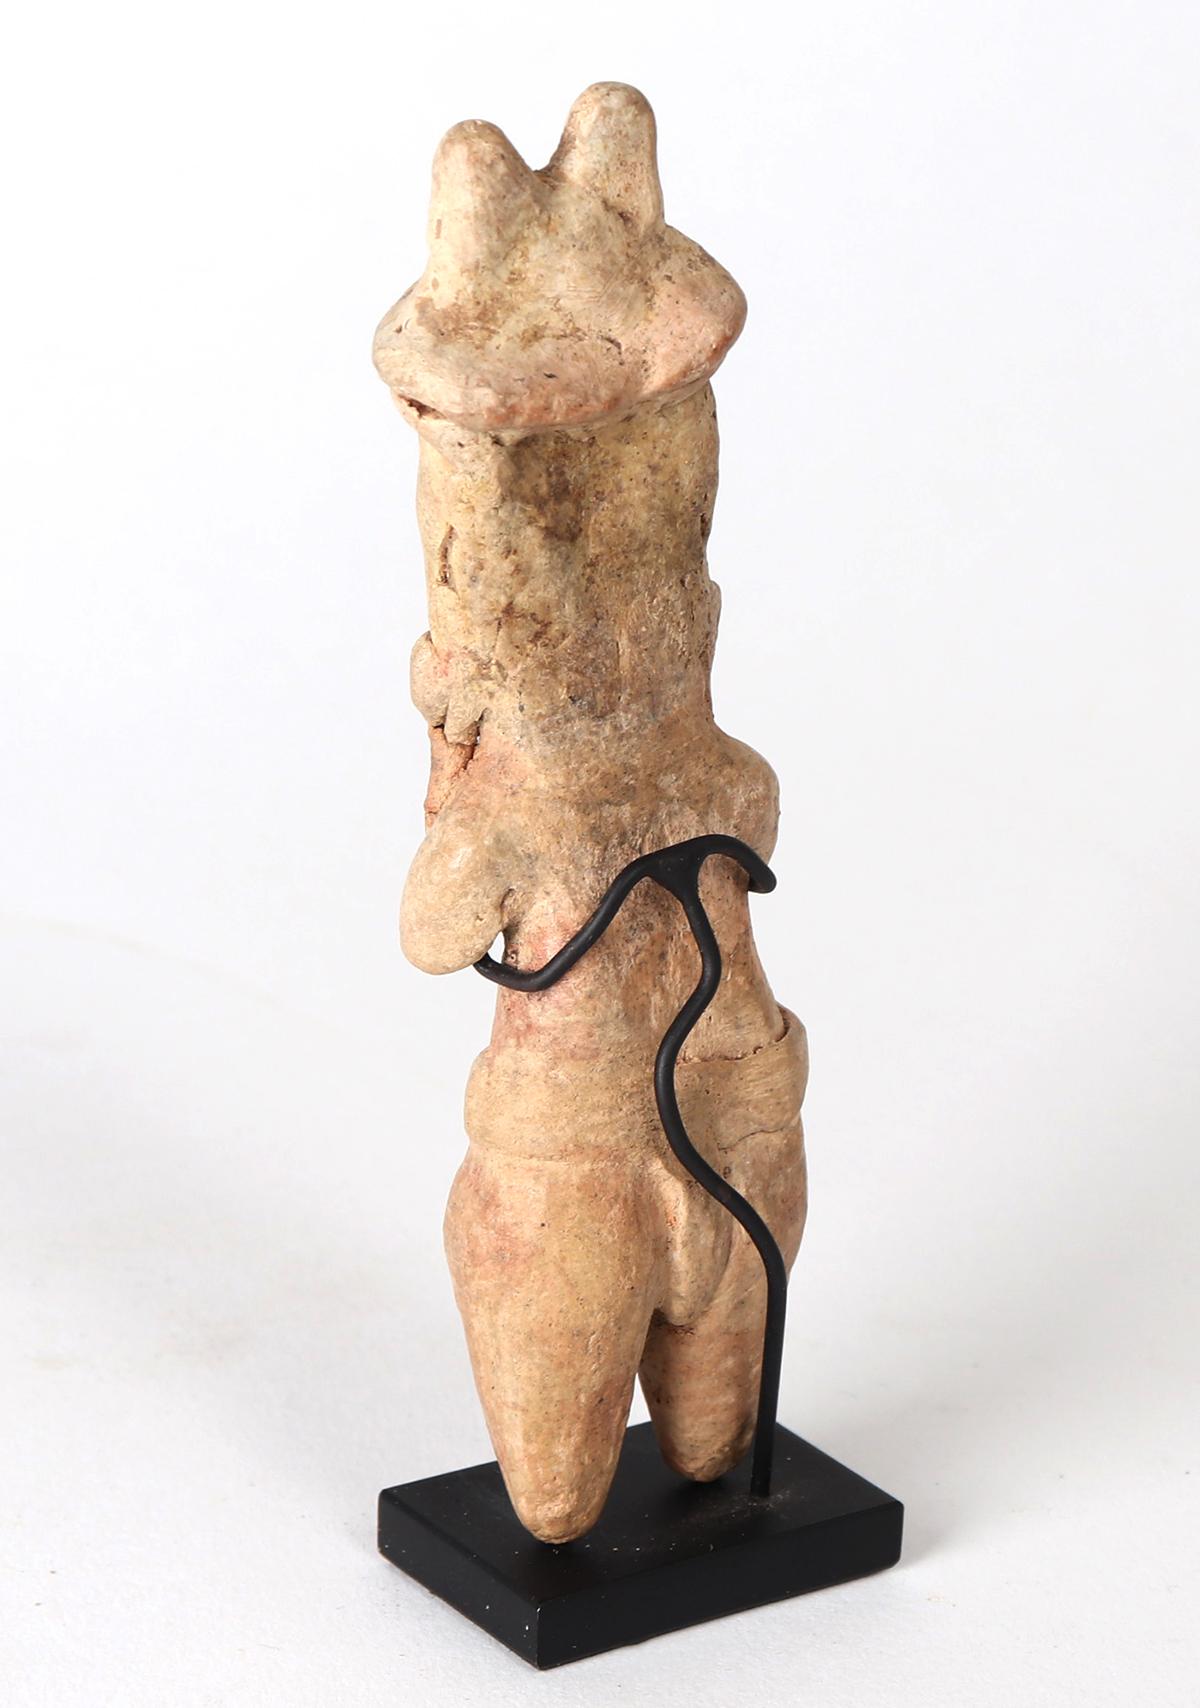 Tlatilco Standing Male Figure, 1150 BCE-550 BCE